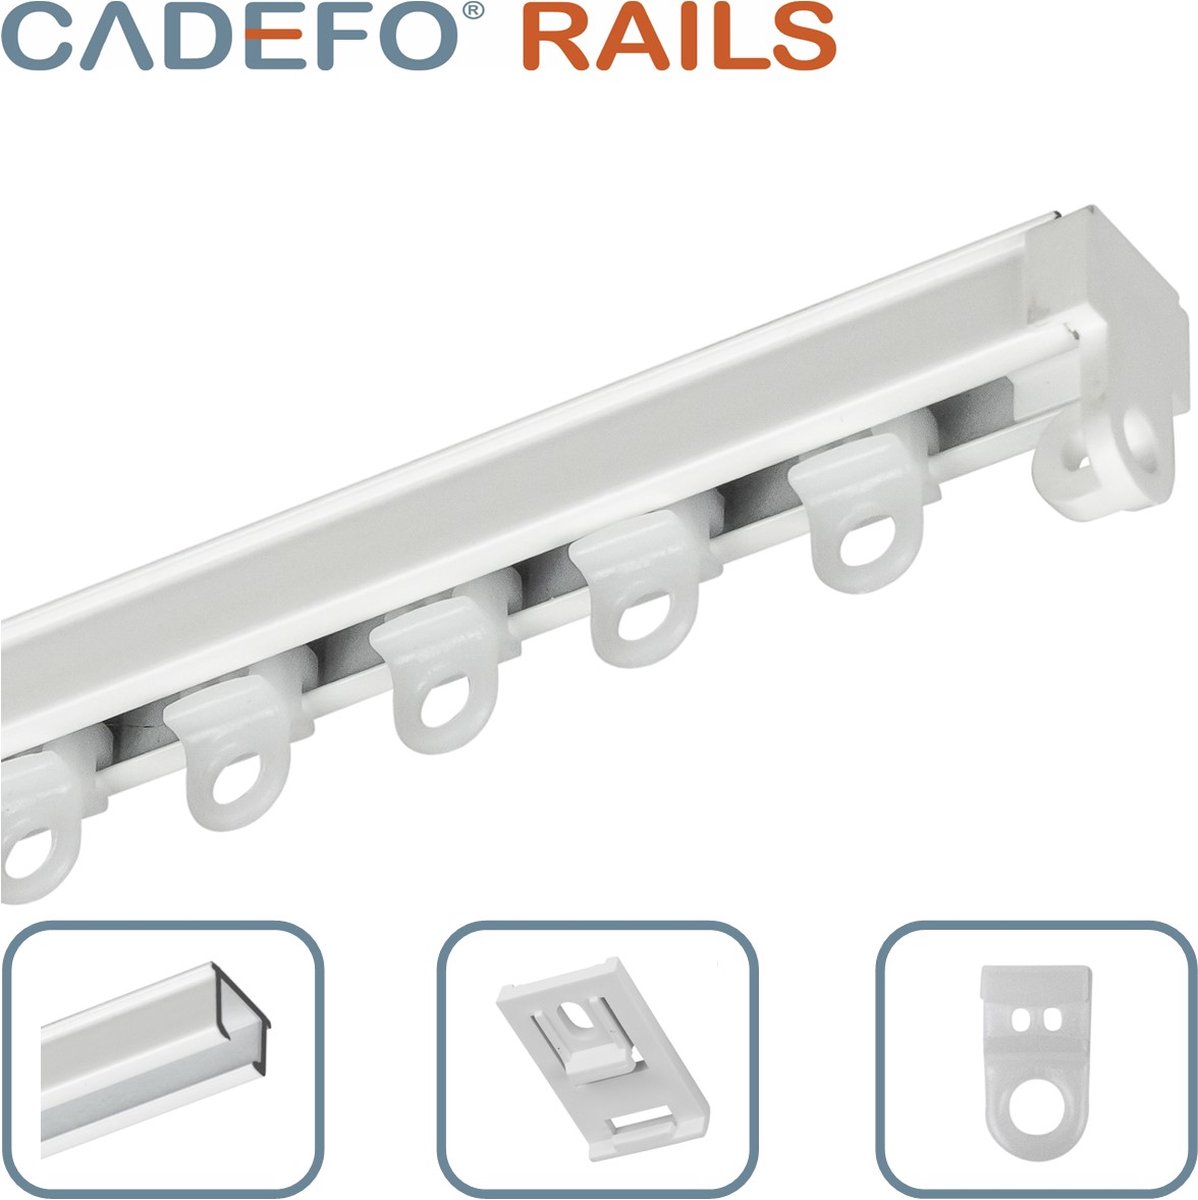 CADEFO RAILS (401 - 450 cm) Gordijnrails - Compleet op maat! - UIT 1 STUK - Leverbaar tot 6 meter - Plafondbevestiging - Lengte 427 cm